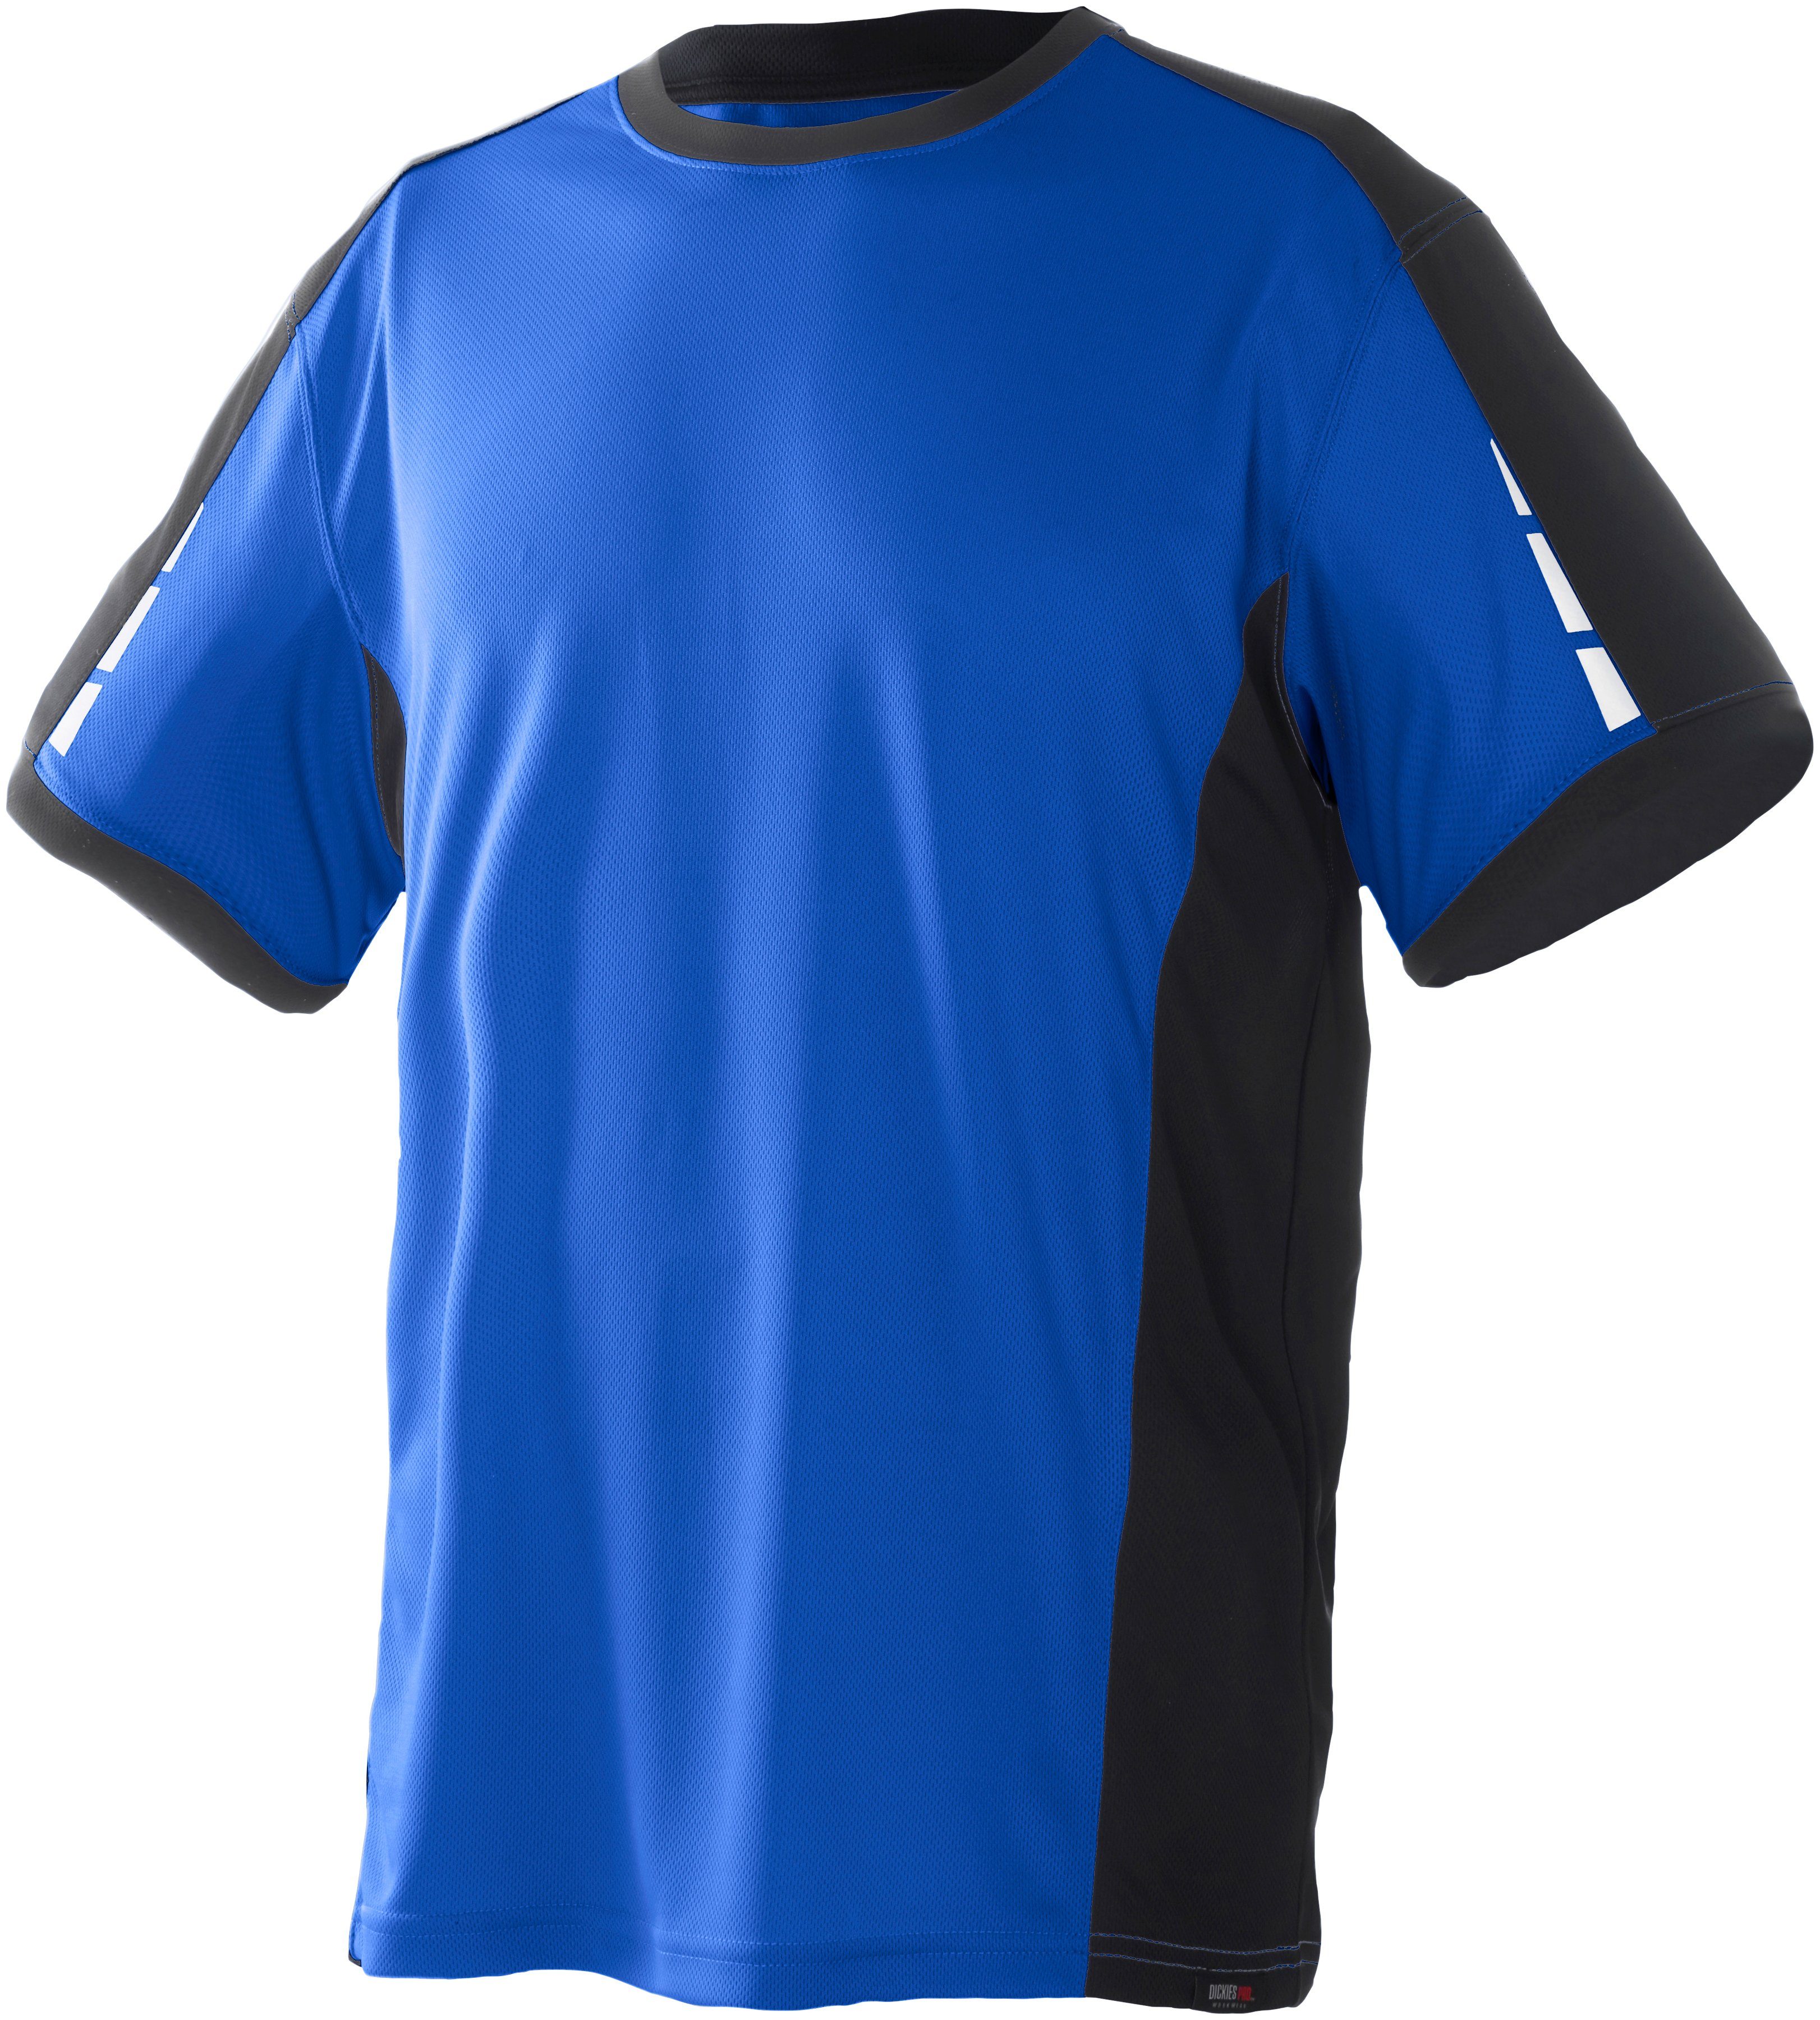 Dickies T-Shirt Pro mit reflektierenden Details an den Ärmeln royalblau-schwarz | T-Shirts